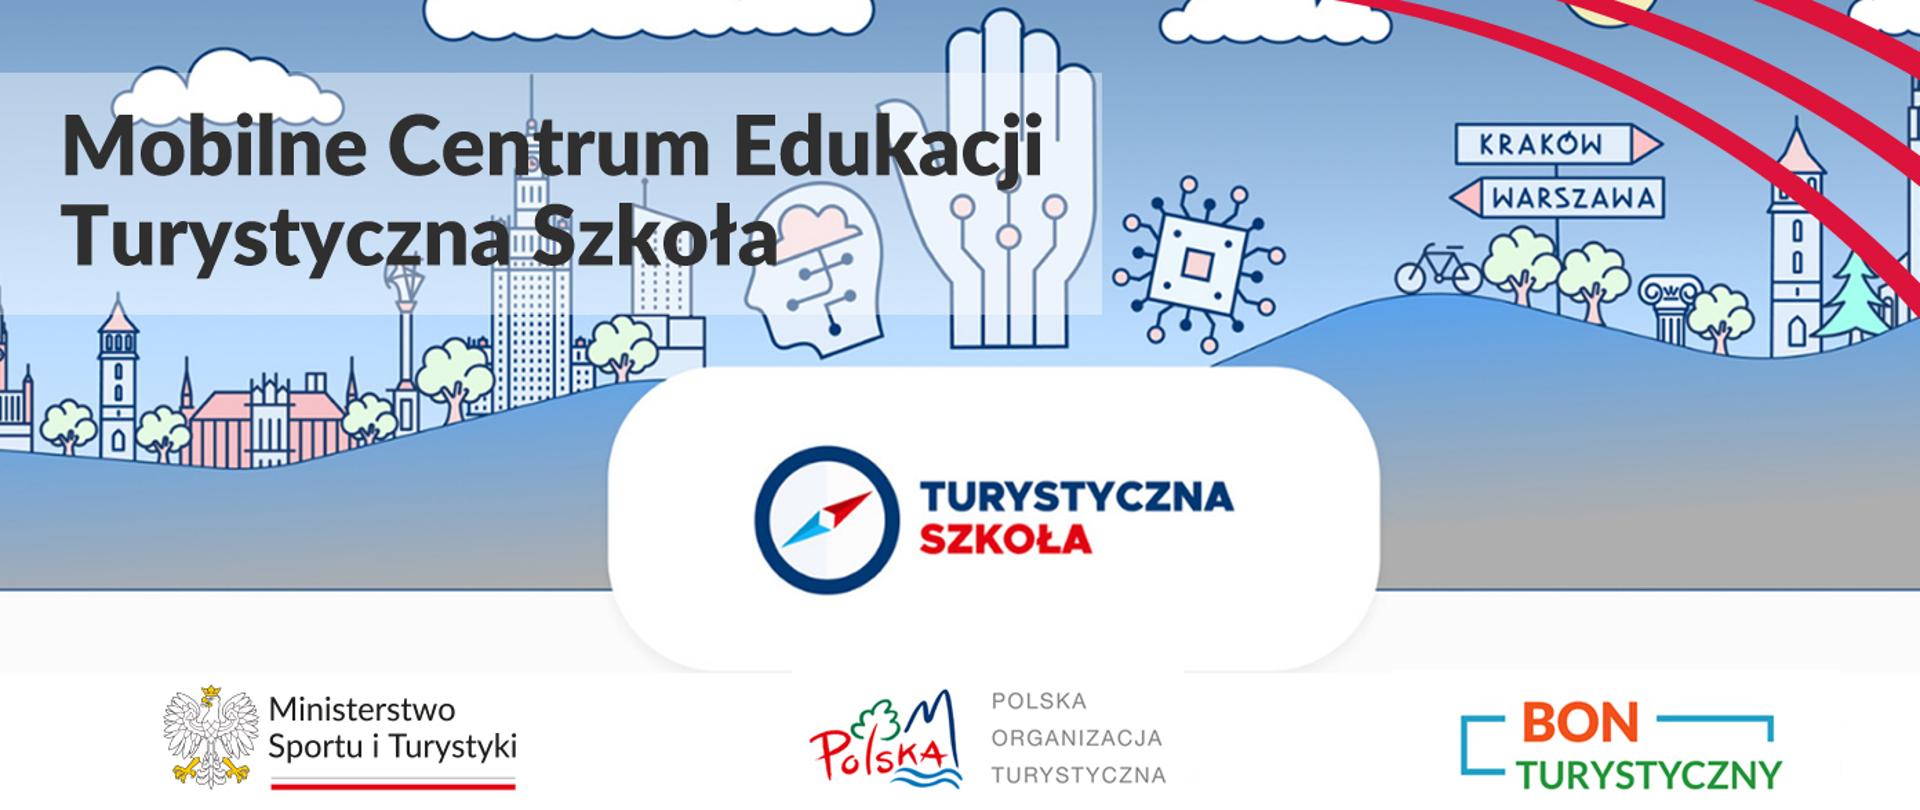 Na grafice znajdują się logotypy Ministerstwa Sportu i Turystyki, Polskiej Organizacji Turystycznej i Bonu Turystycznego. W lewym górnym rogu znajduje się napis "Mobilne Centrum Edukacji Turystyczna Szkoła", a w prawym górnym rogu trzy równoległe względem siebie czerwone łuki. 